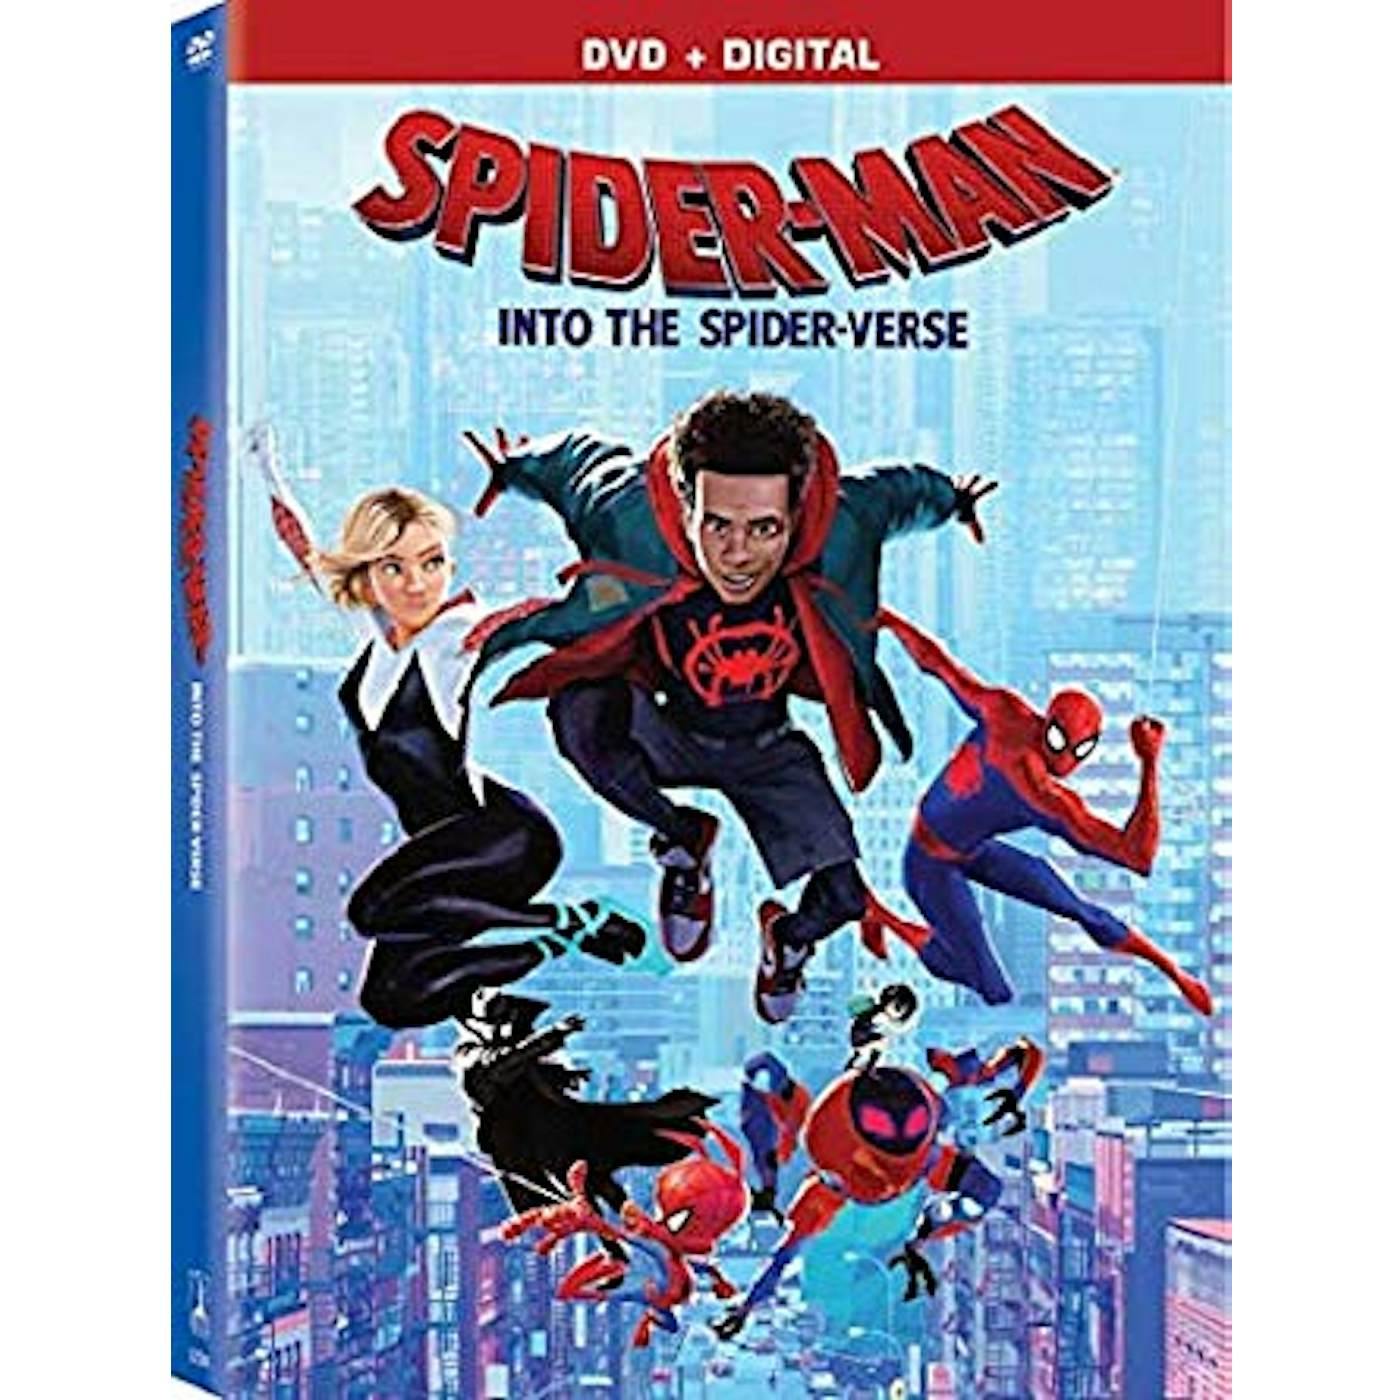 SPIDER-MAN: INTO THE SPIDER-VERSE DVD